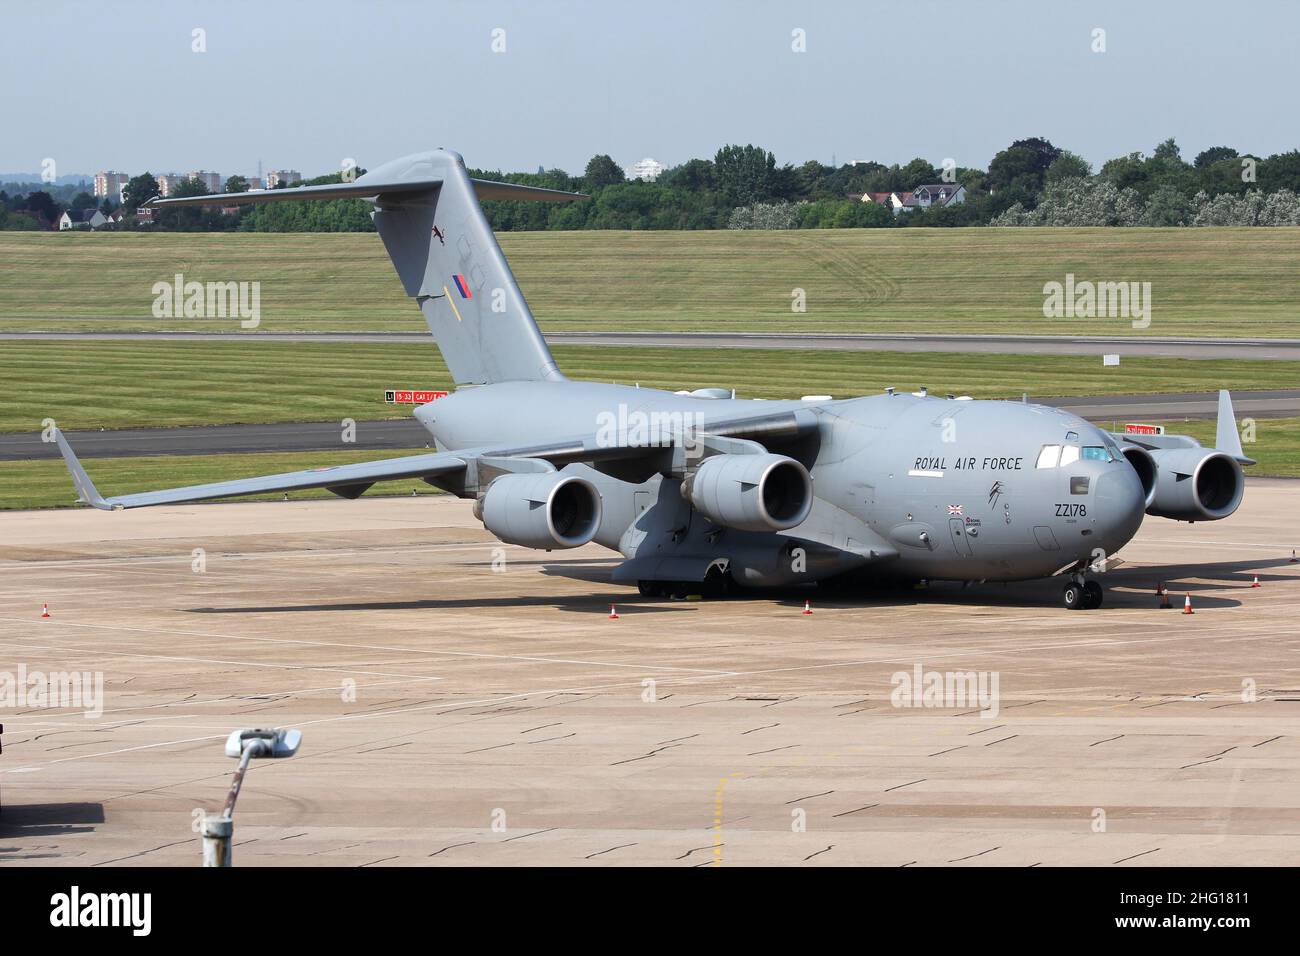 Aviones de transporte Royal Air Force Boeing C-17 Globemaster II en el aeropuerto de Birmingham Foto de stock